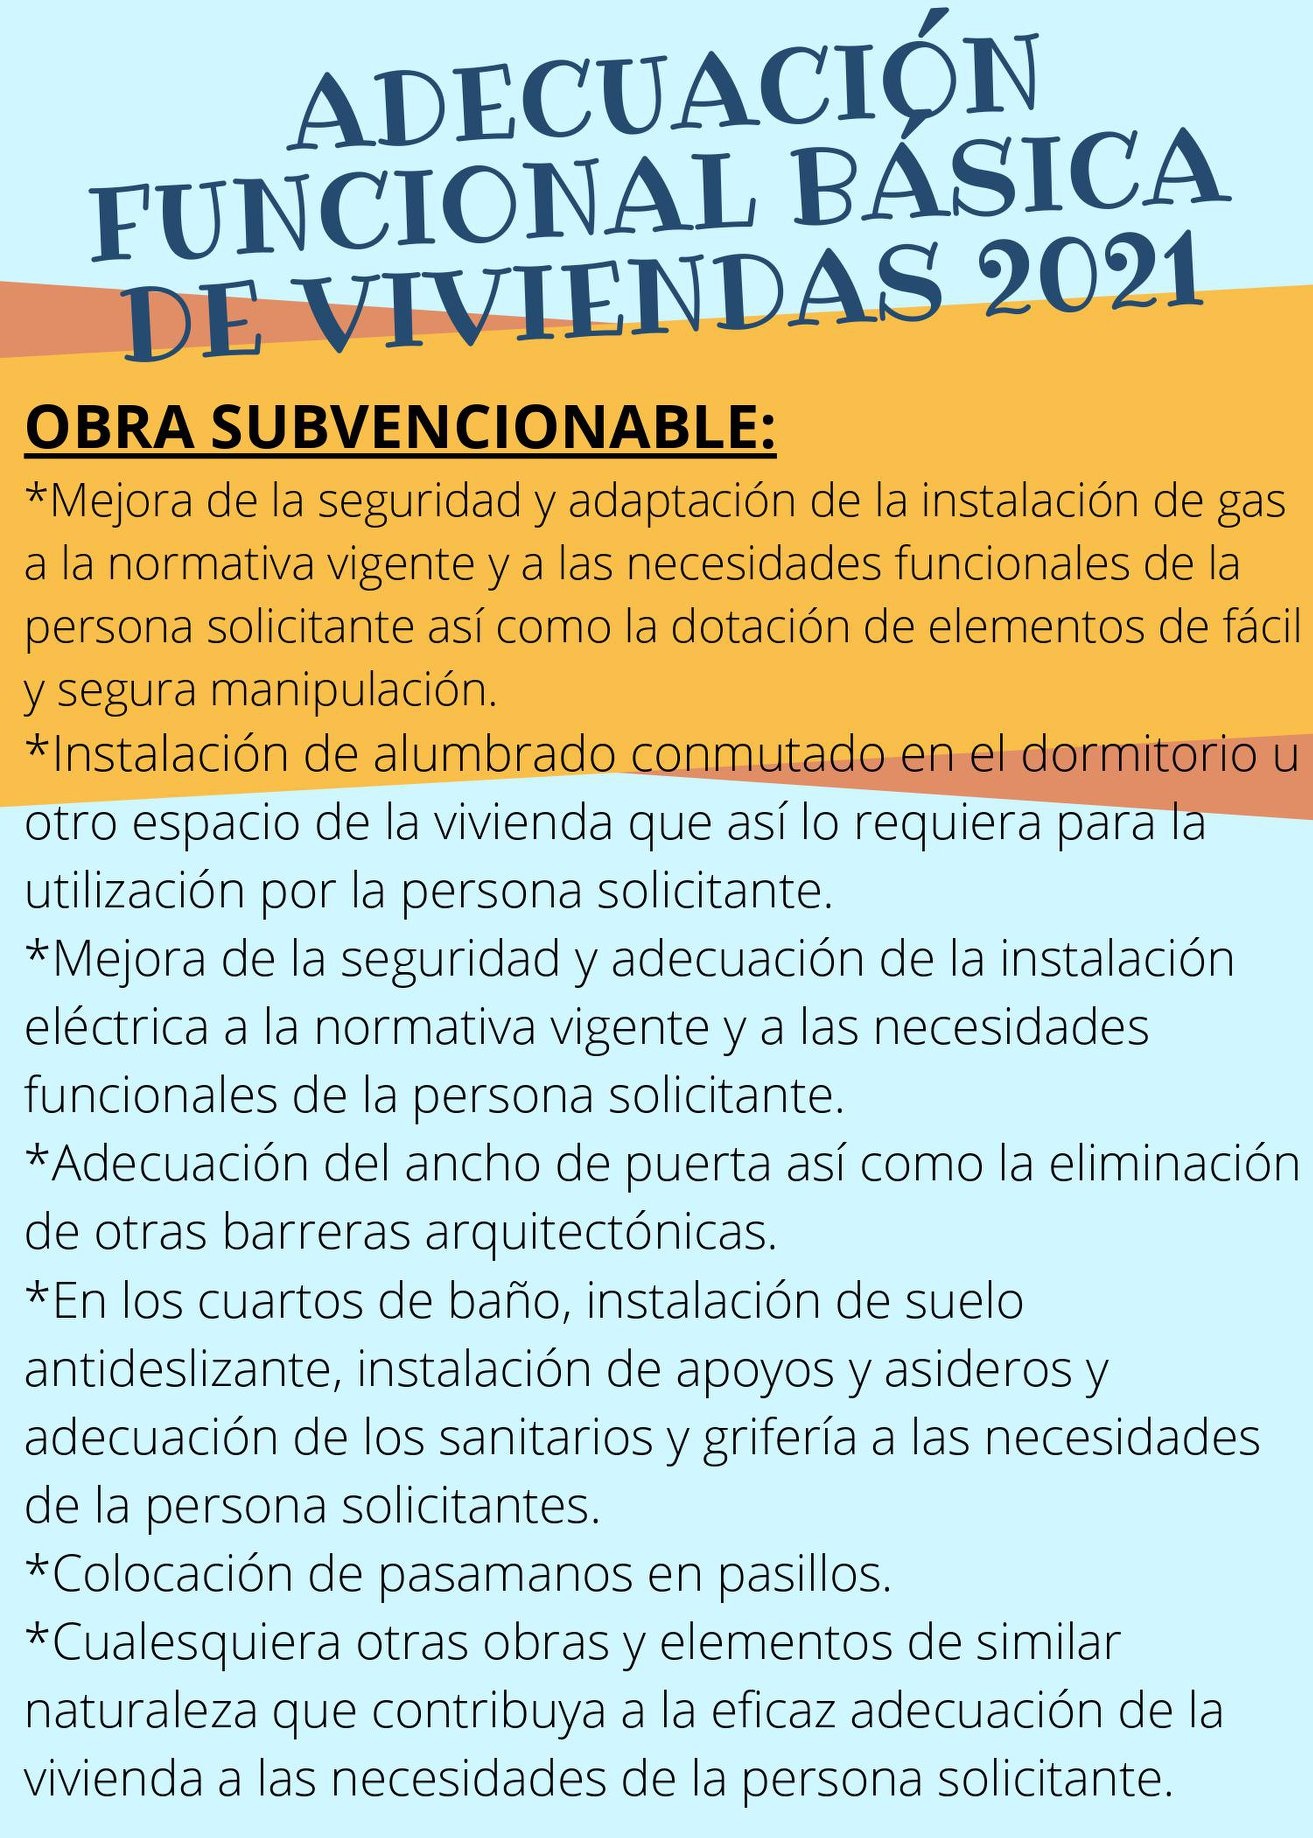 12.-ADECUACIÓN FUNCIONAL BASICA DE VIVIENDA 2021